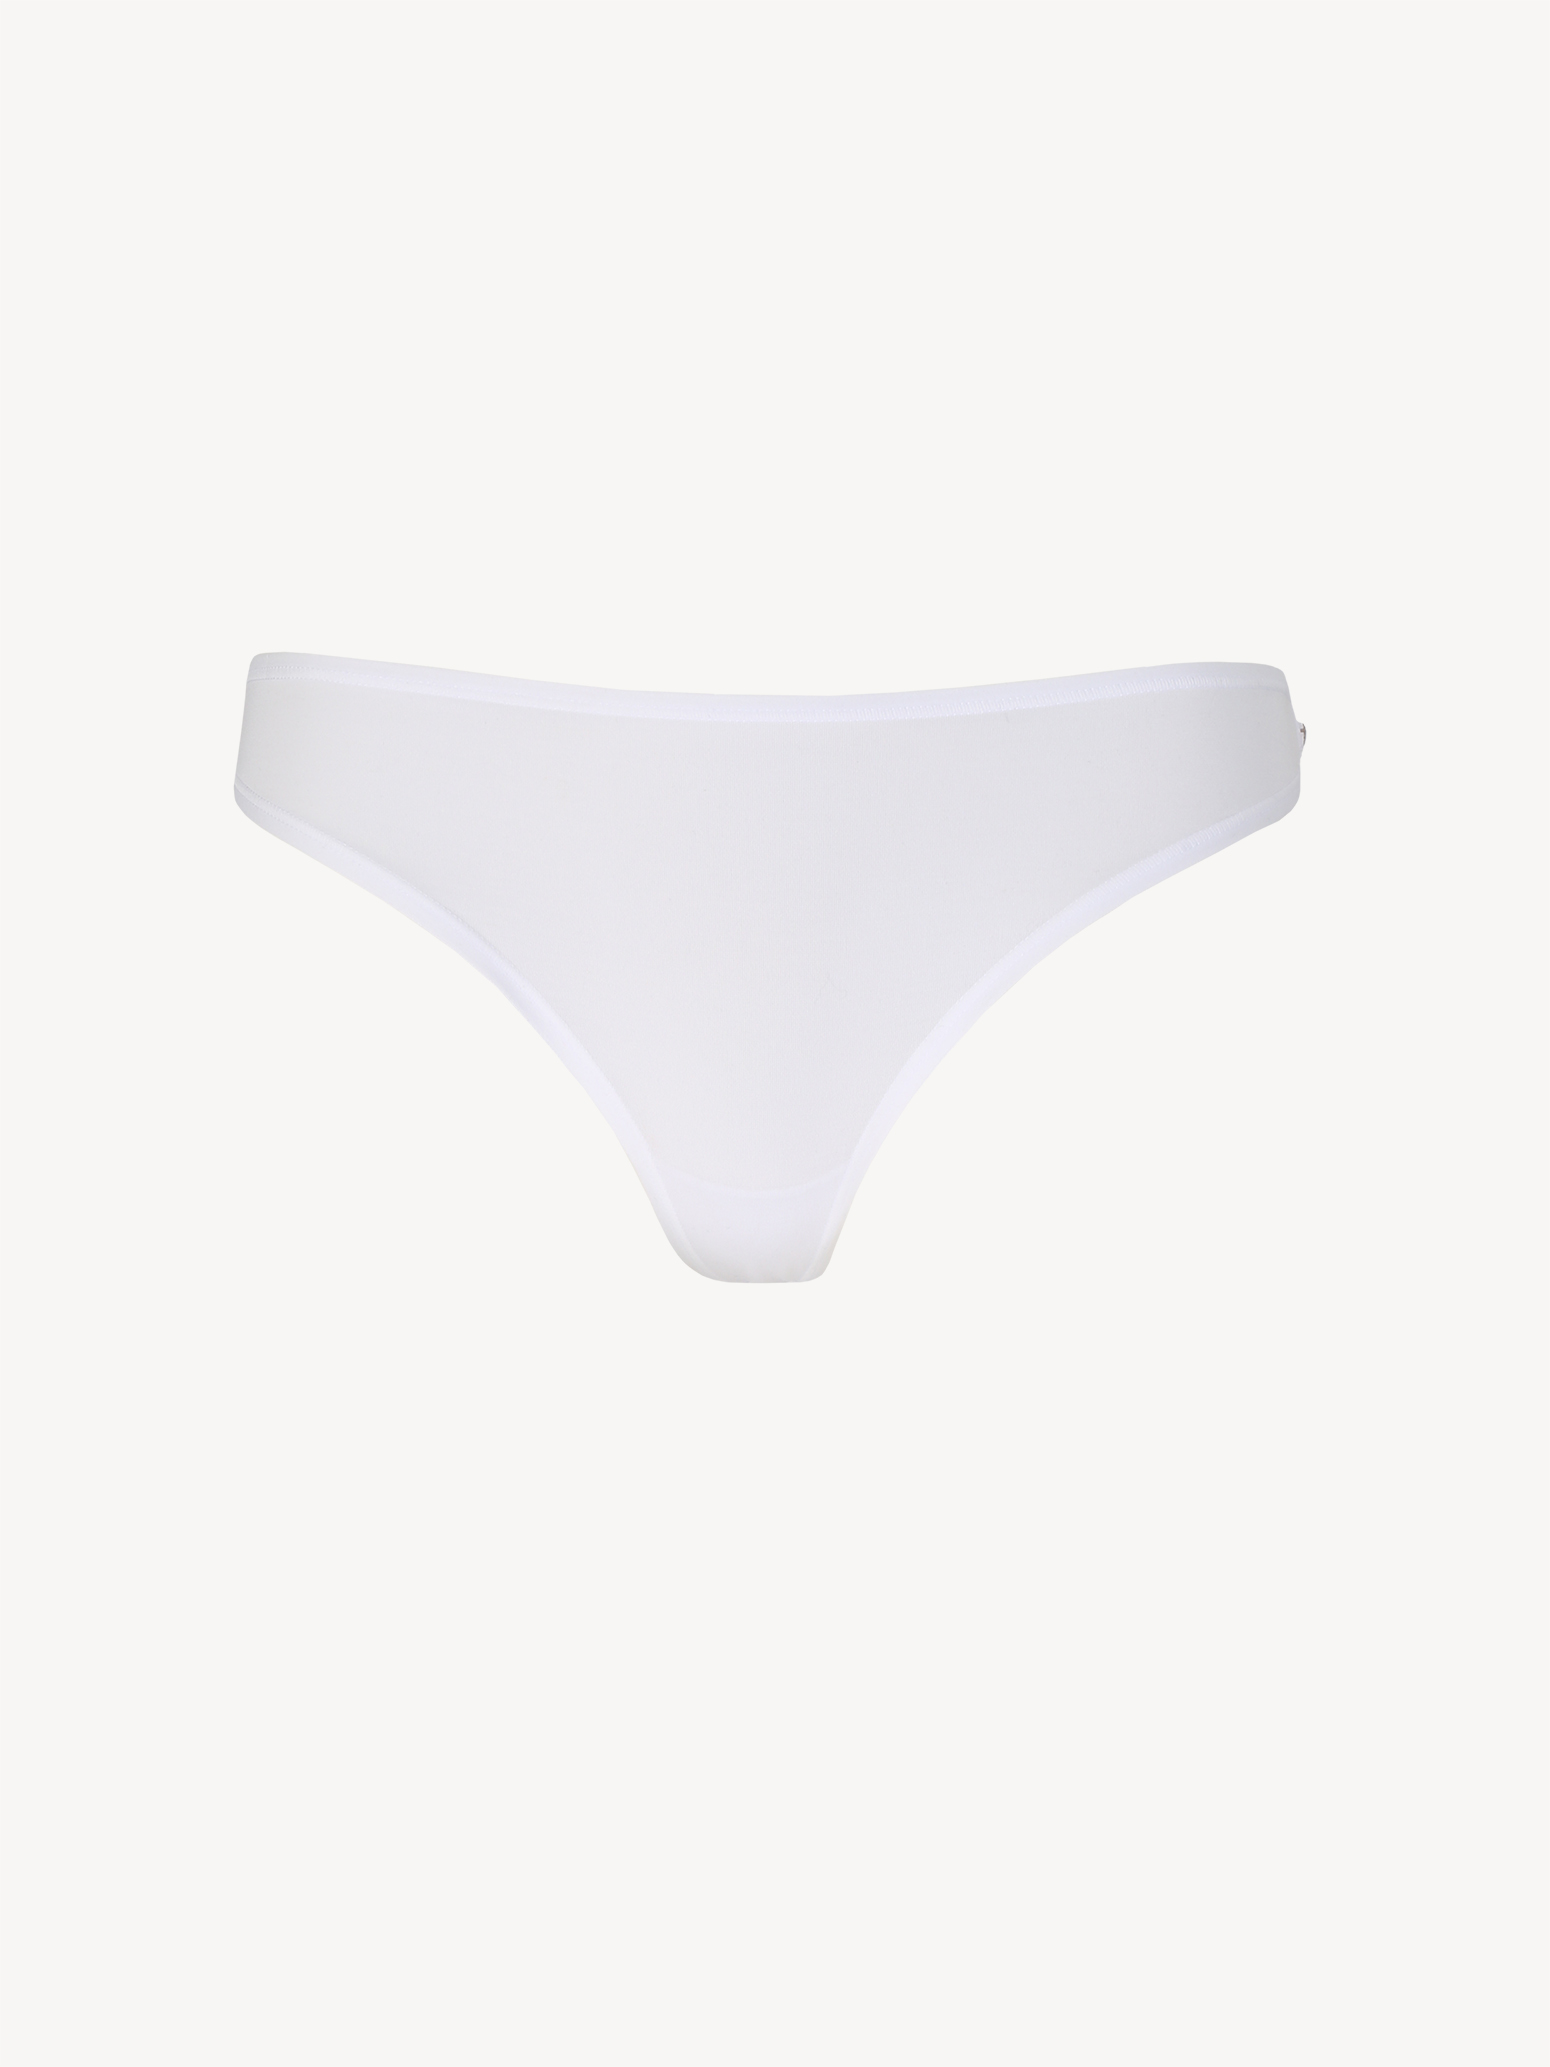 Bra - white TAW0192-10001: Buy Tamaris Underwear online!